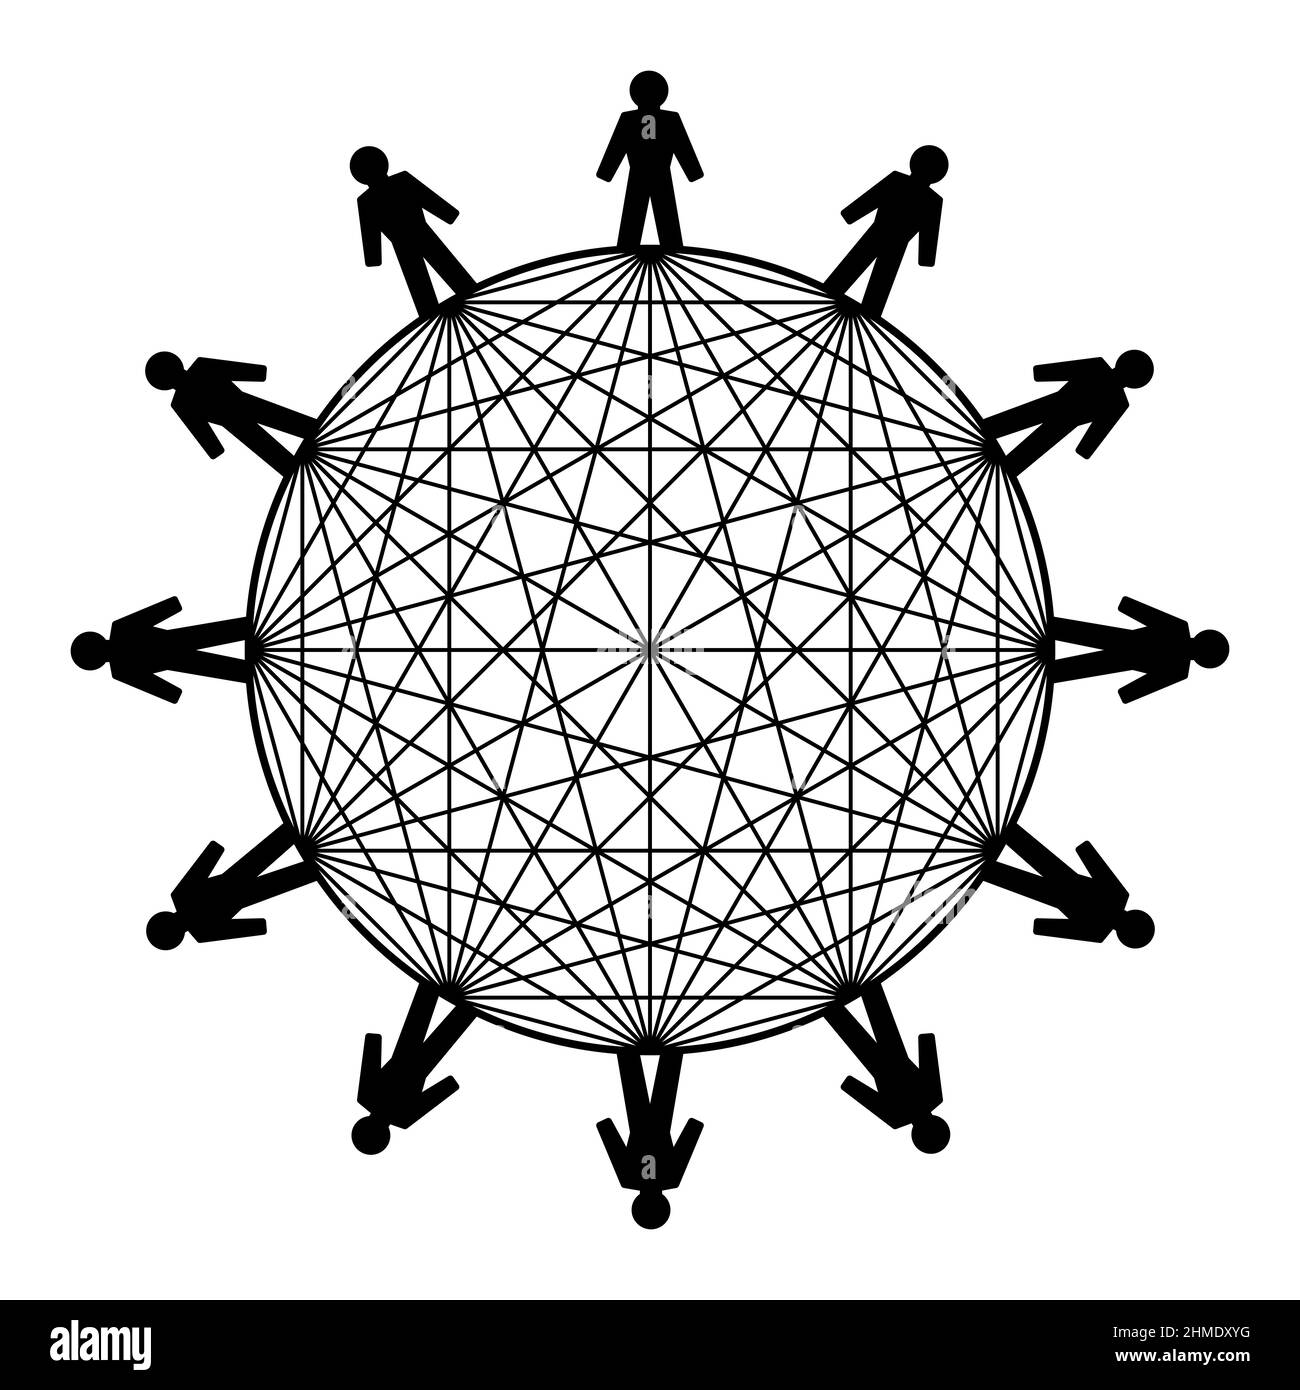 Simbolo per la potenza della rete. Dodici persone in cerchio, collegate con le linee. Il numero di connessioni possibili univoche è 66. Foto Stock